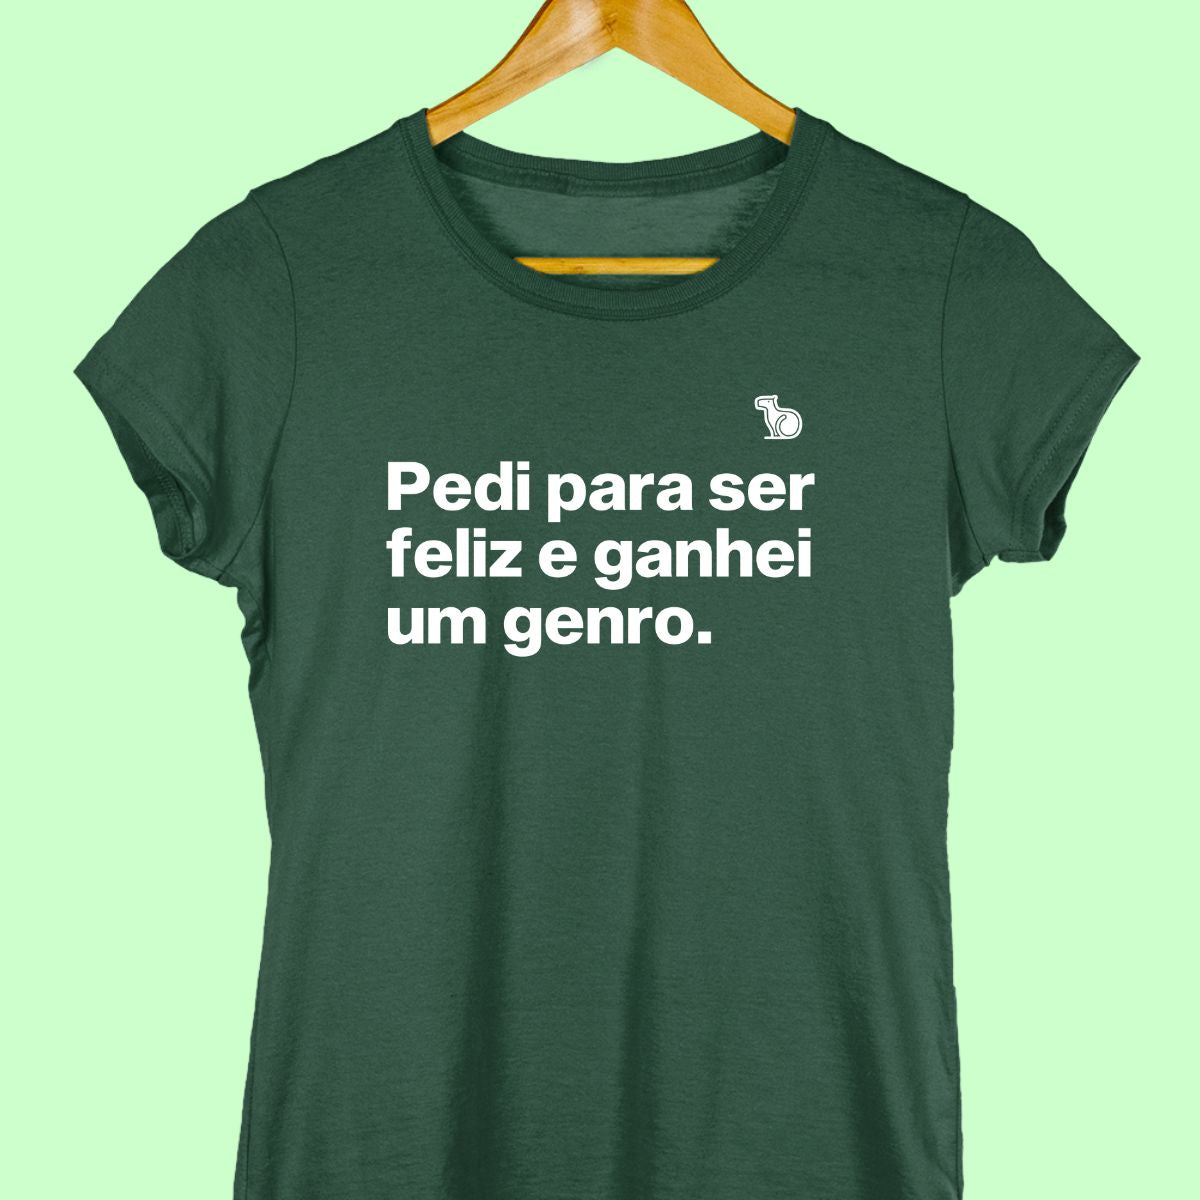 Camiseta com a frase "pedi para ser feliz e ganhei um genro." feminina verde.